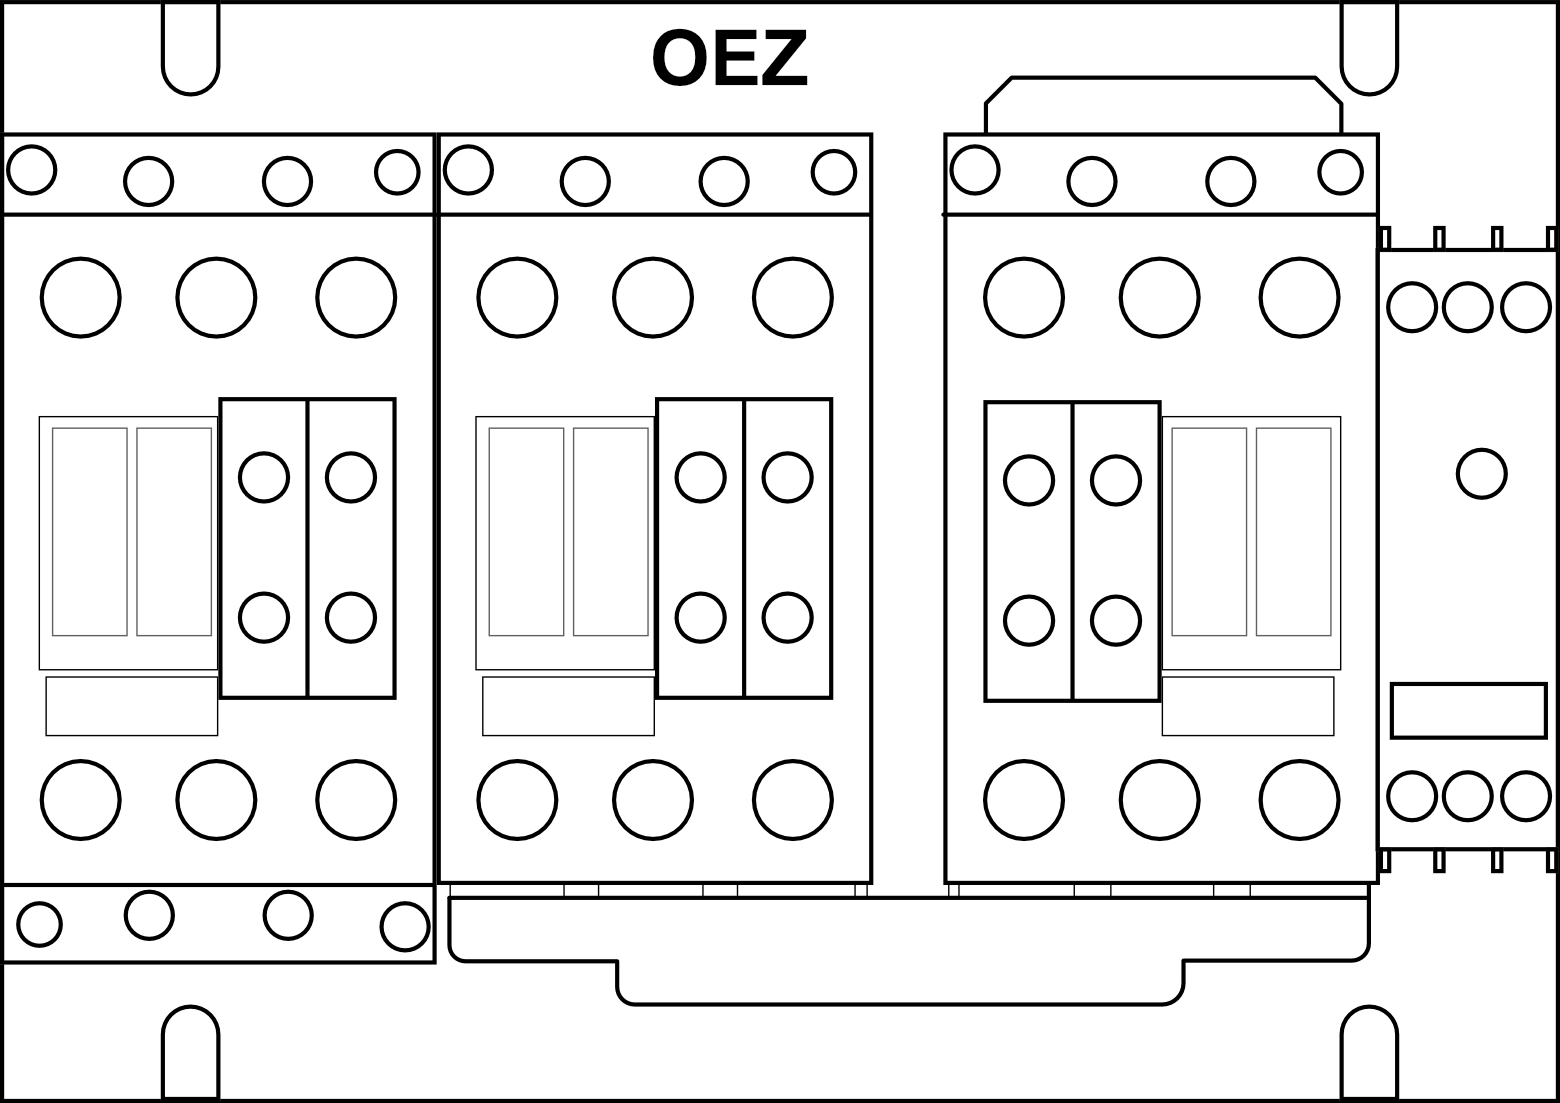 Stykačová kombinace spouštění Y/D OEZ Conteo 3RA1436-8XC21-1BB4 velikost 50-50-50, 86A, ovládací napětí 24V DC